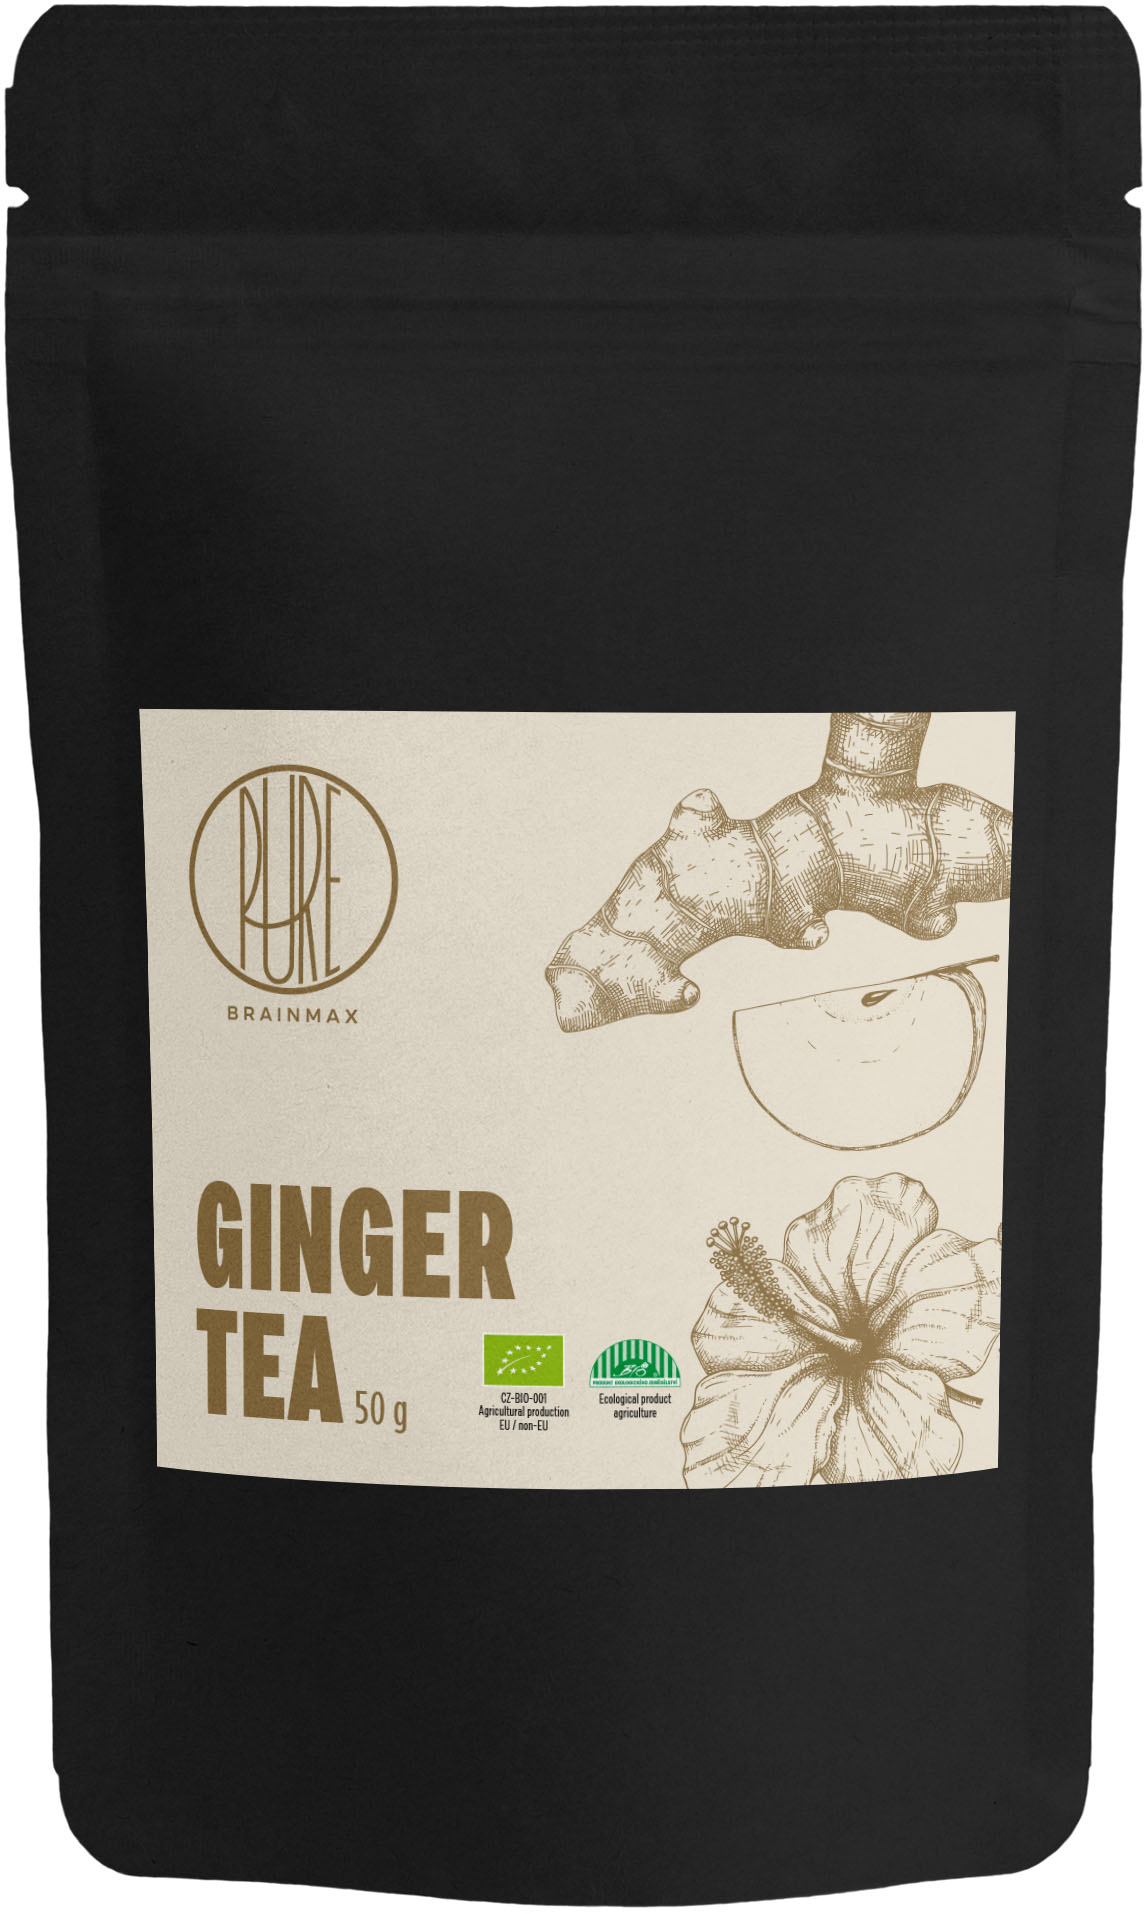 BrainMax Pure Ginger Tea, zázvorový čaj, BIO, 50 g Objem: 50 g *CZ-BIO-001 certifikát / bylinný čaj se zázvorem, jablkem a pomerančovou kůrou